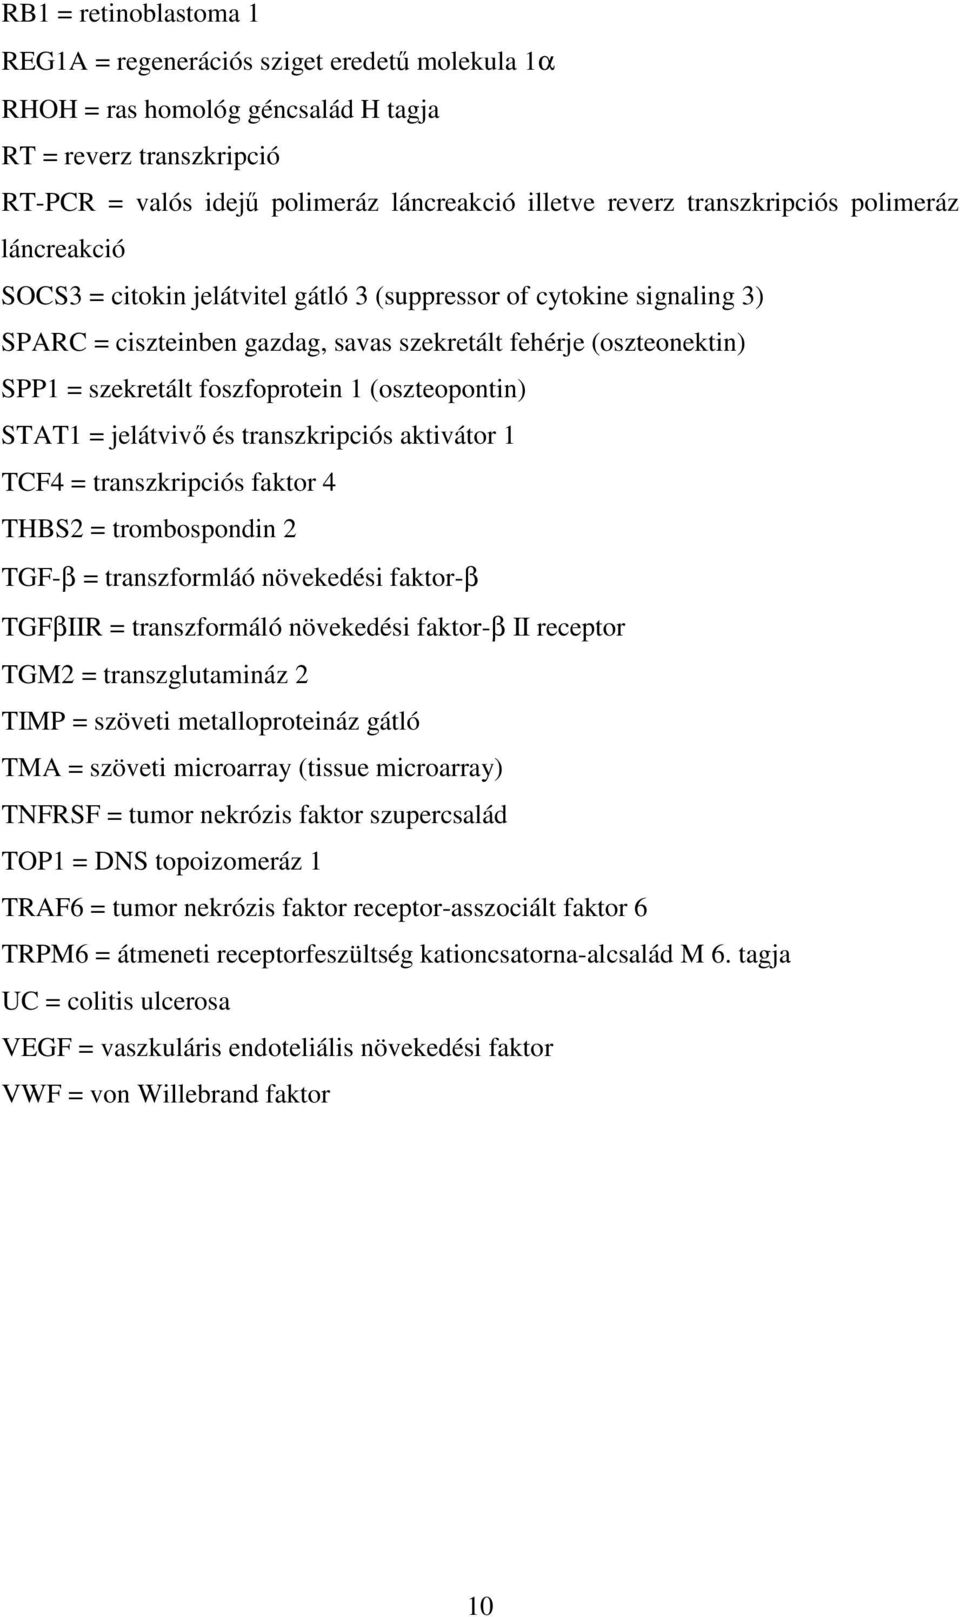 foszfoprotein 1 (oszteopontin) STAT1 = jelátvivı és transzkripciós aktivátor 1 TCF4 = transzkripciós faktor 4 THBS2 = trombospondin 2 TGF-β = transzformláó növekedési faktor-β TGFβIIR = transzformáló